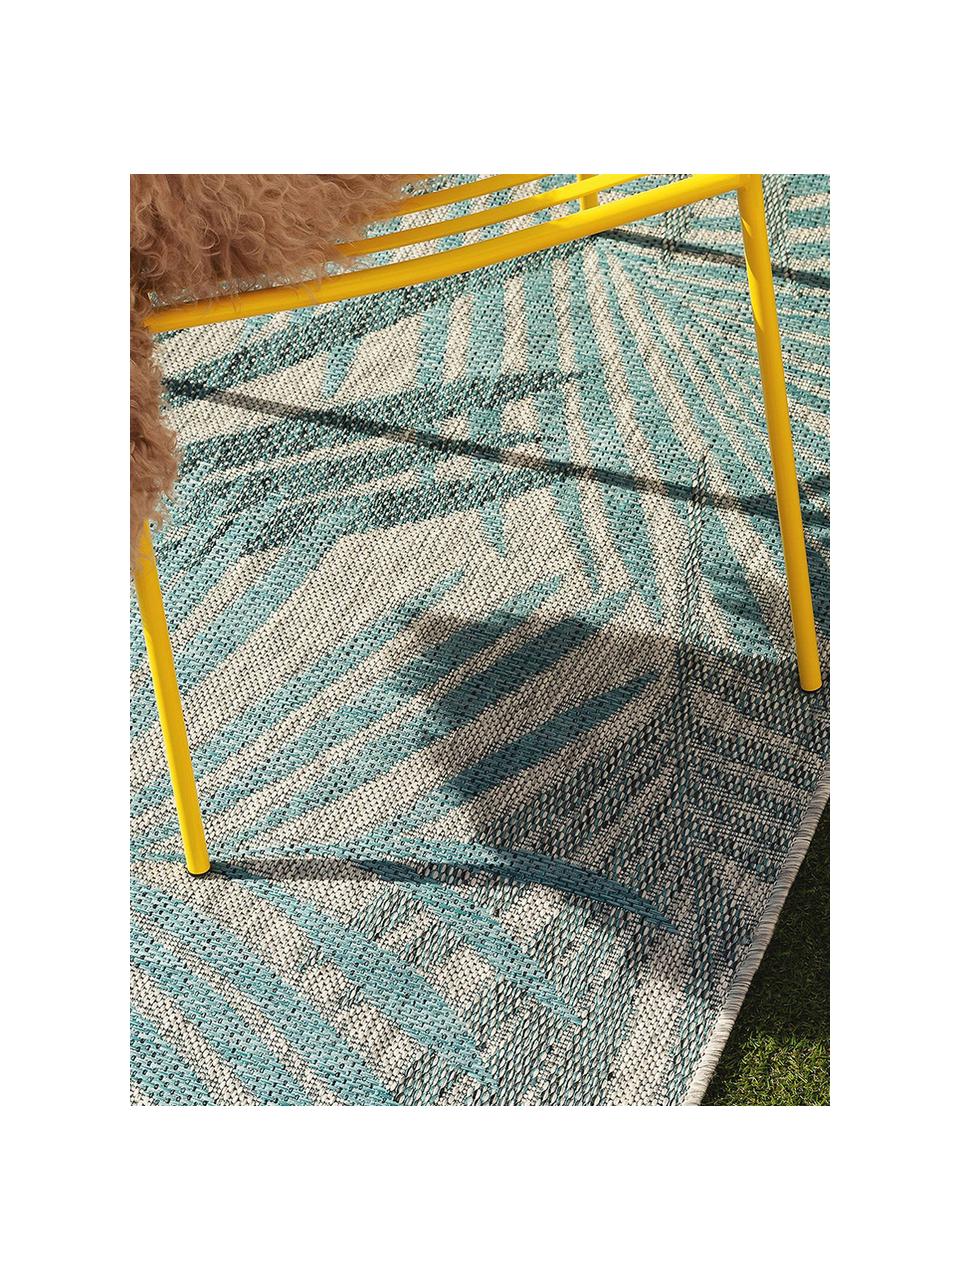 In- & Outdoor-Teppich Cleo mit Palmenblattmotiv, 90% Polypropylen, 10% Polyester, Blau, B 80 x L 150 cm (Größe XS)